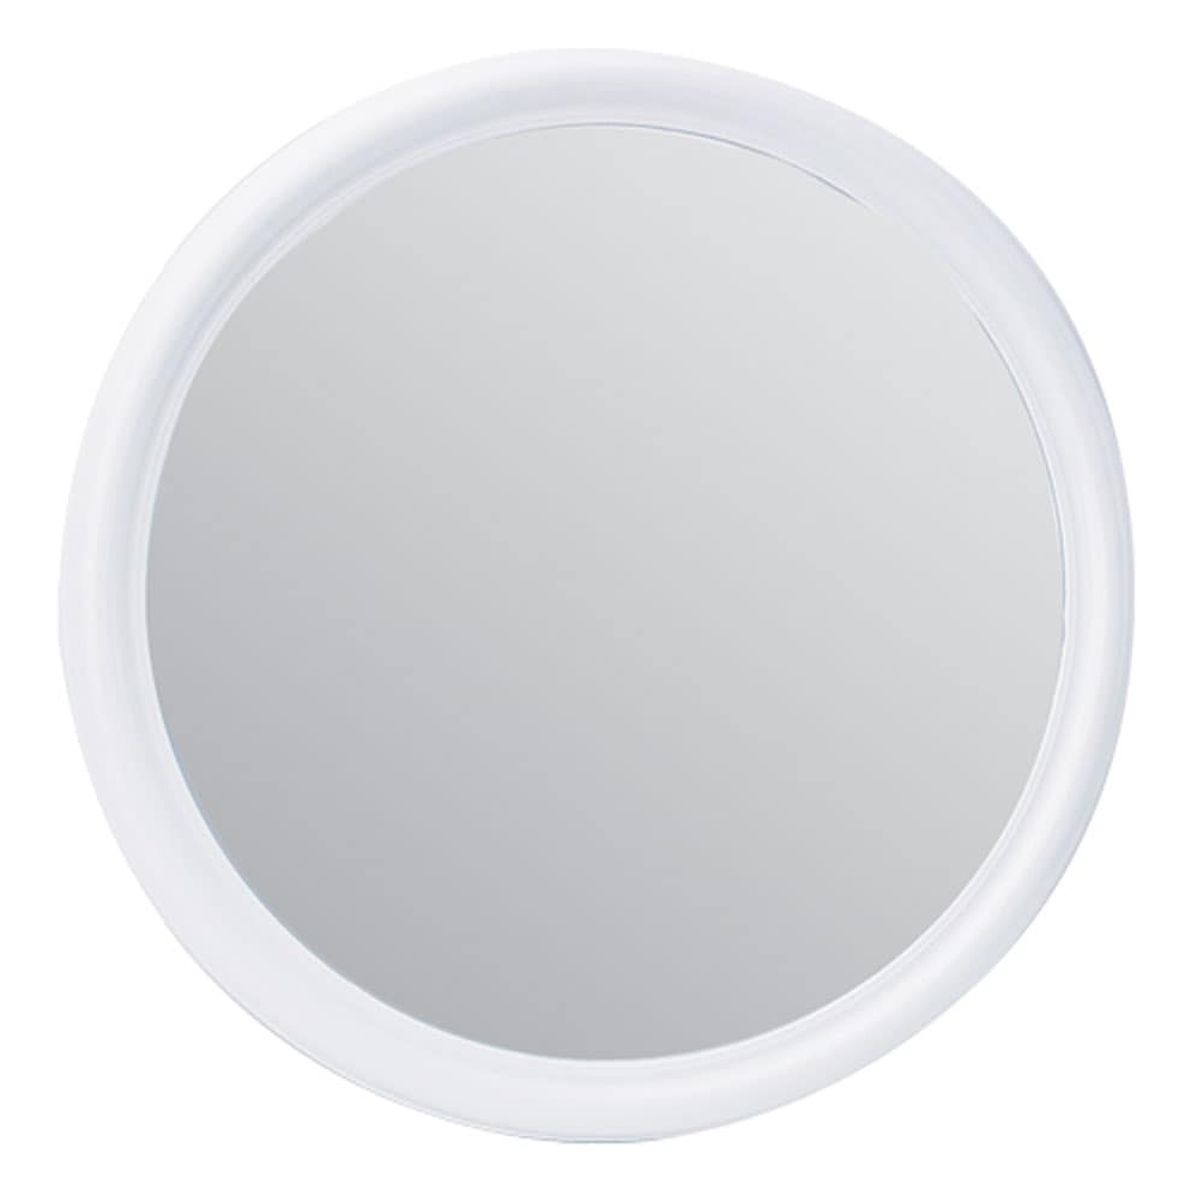 Καθρέπτες Στρογγυλός Φ45cm 200-012 Technoset